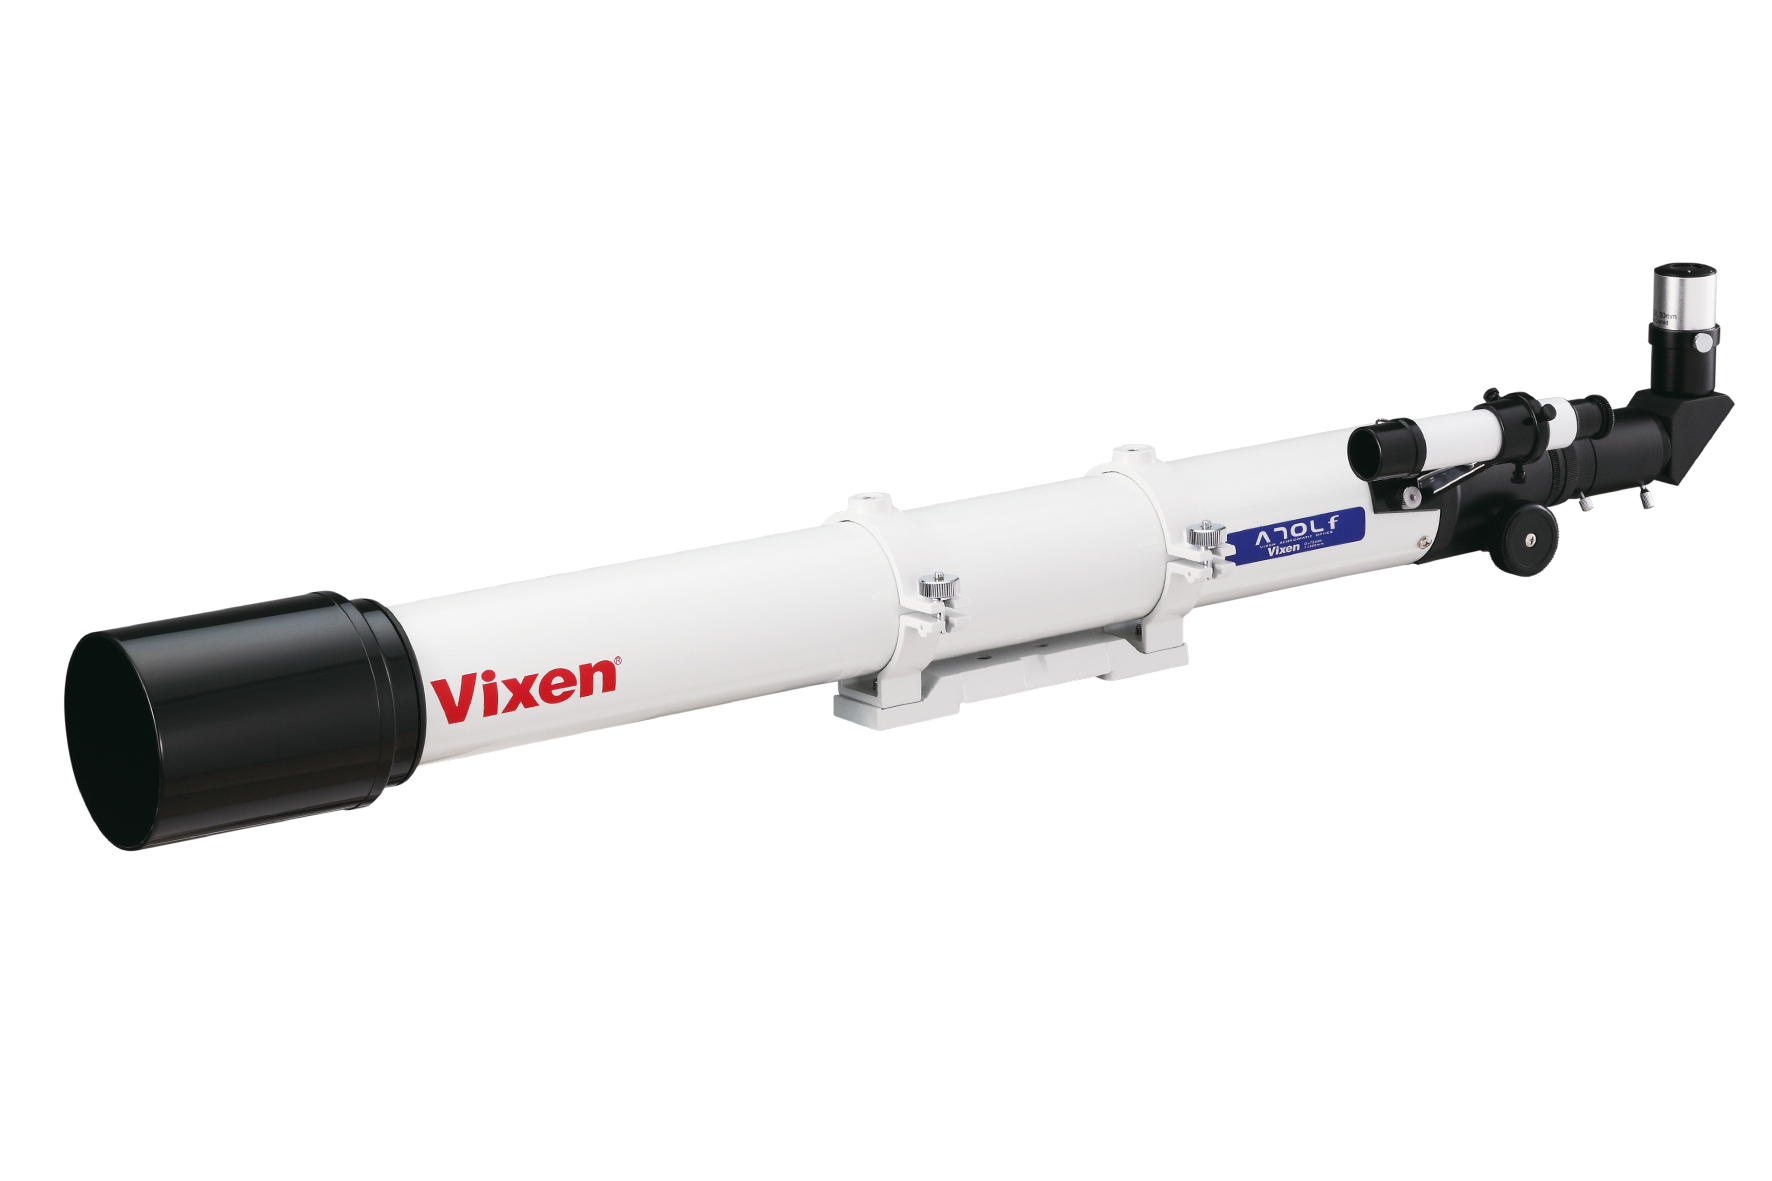 Vixen A70Lf Achromatischer Refraktor - optischer Tubus